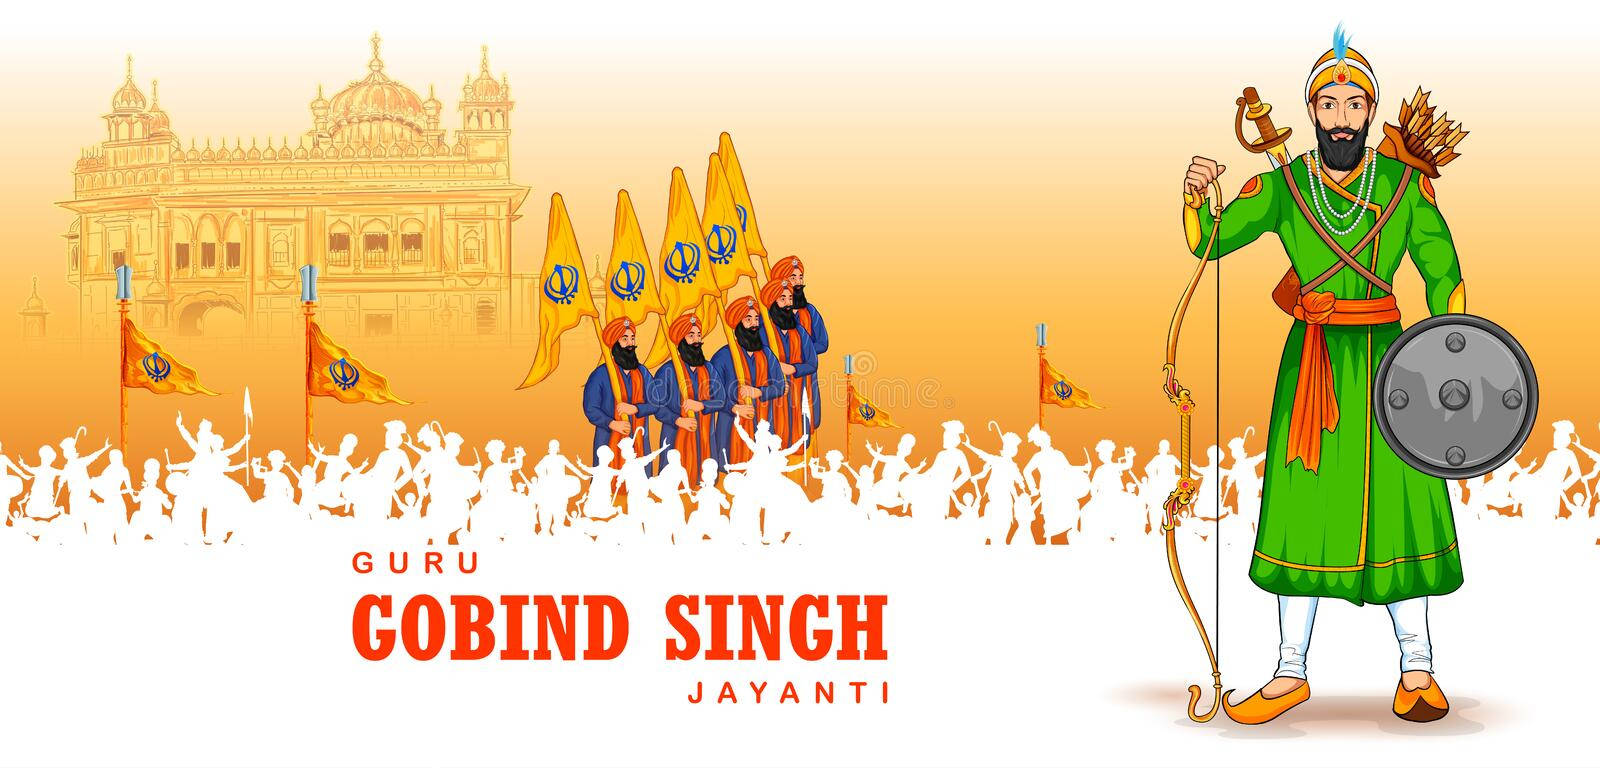 Guru Gobind Singh Ji With Soldiers Wallpaper